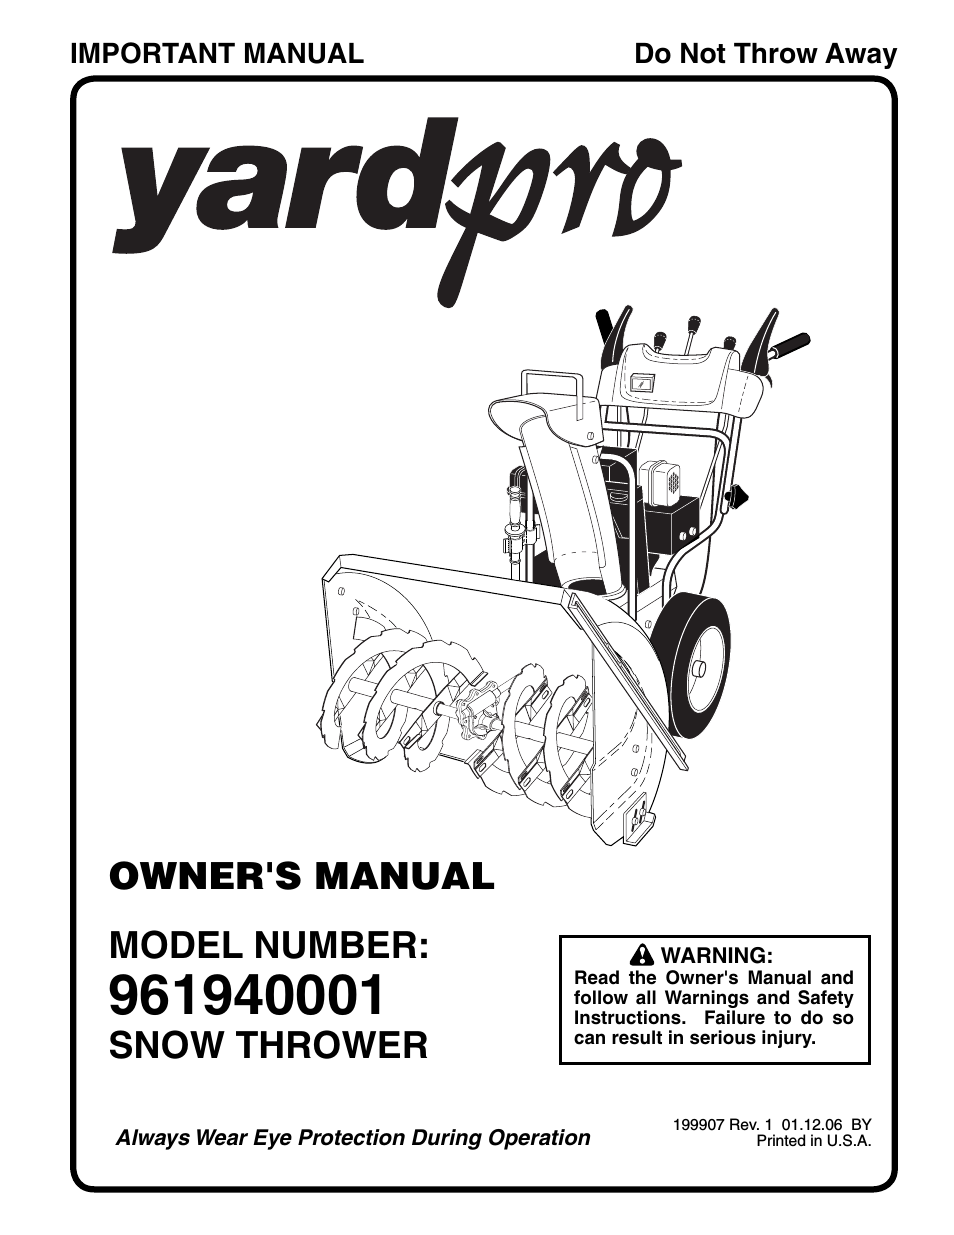 yardpro 961940001